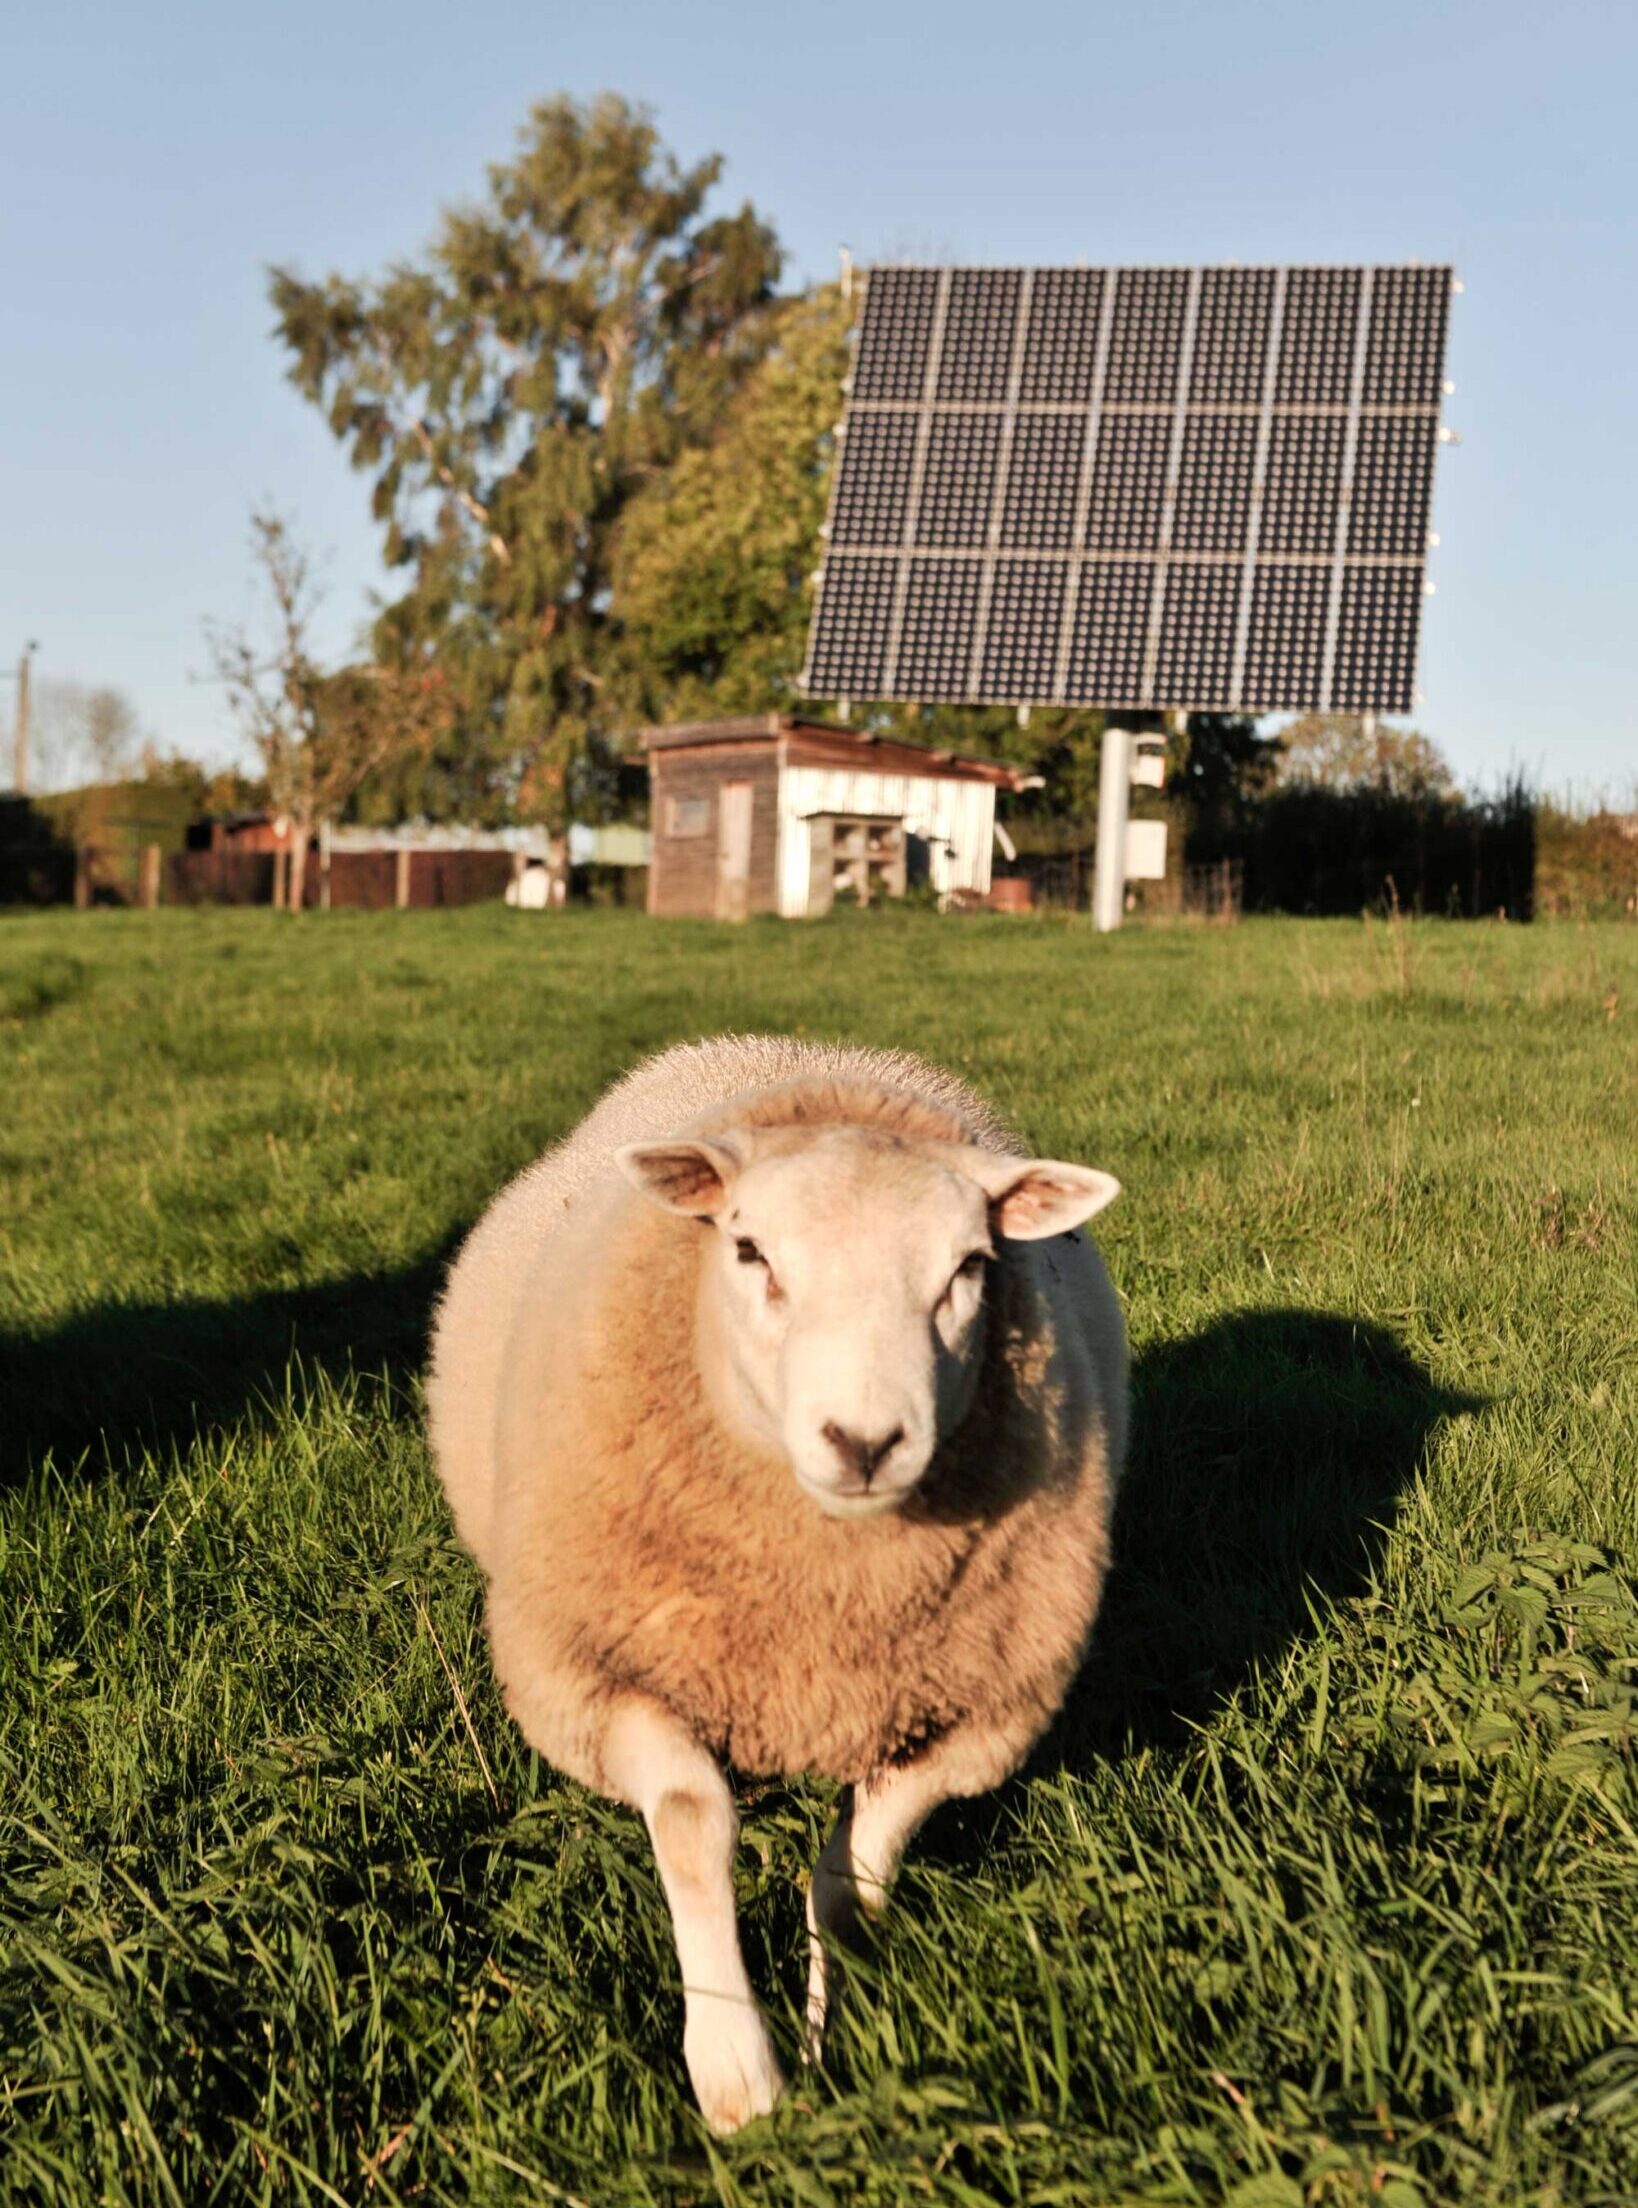 solarni paneli mogu pružiti hladovinu usevima ili stoci, čime se smanjuje toplotni stres i poboljšava efikasnost rasta.